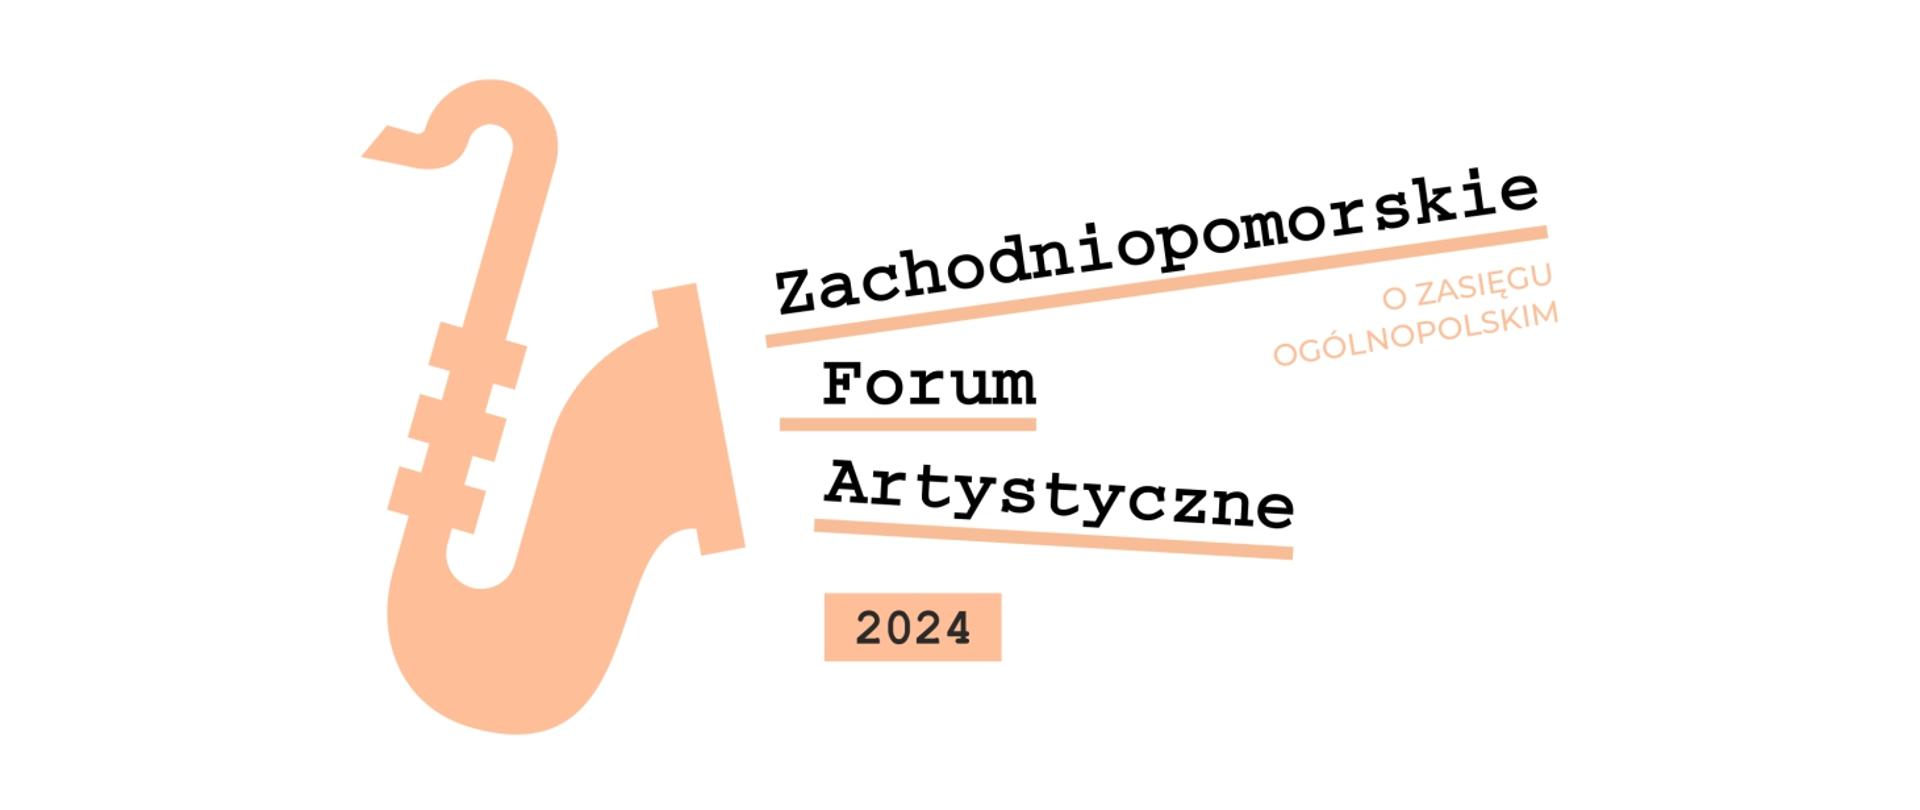 Grafika przedstawia logo wydarzenia oraz prezentuje napis: Zachodniopomorskie Forum Artystyczne 2024